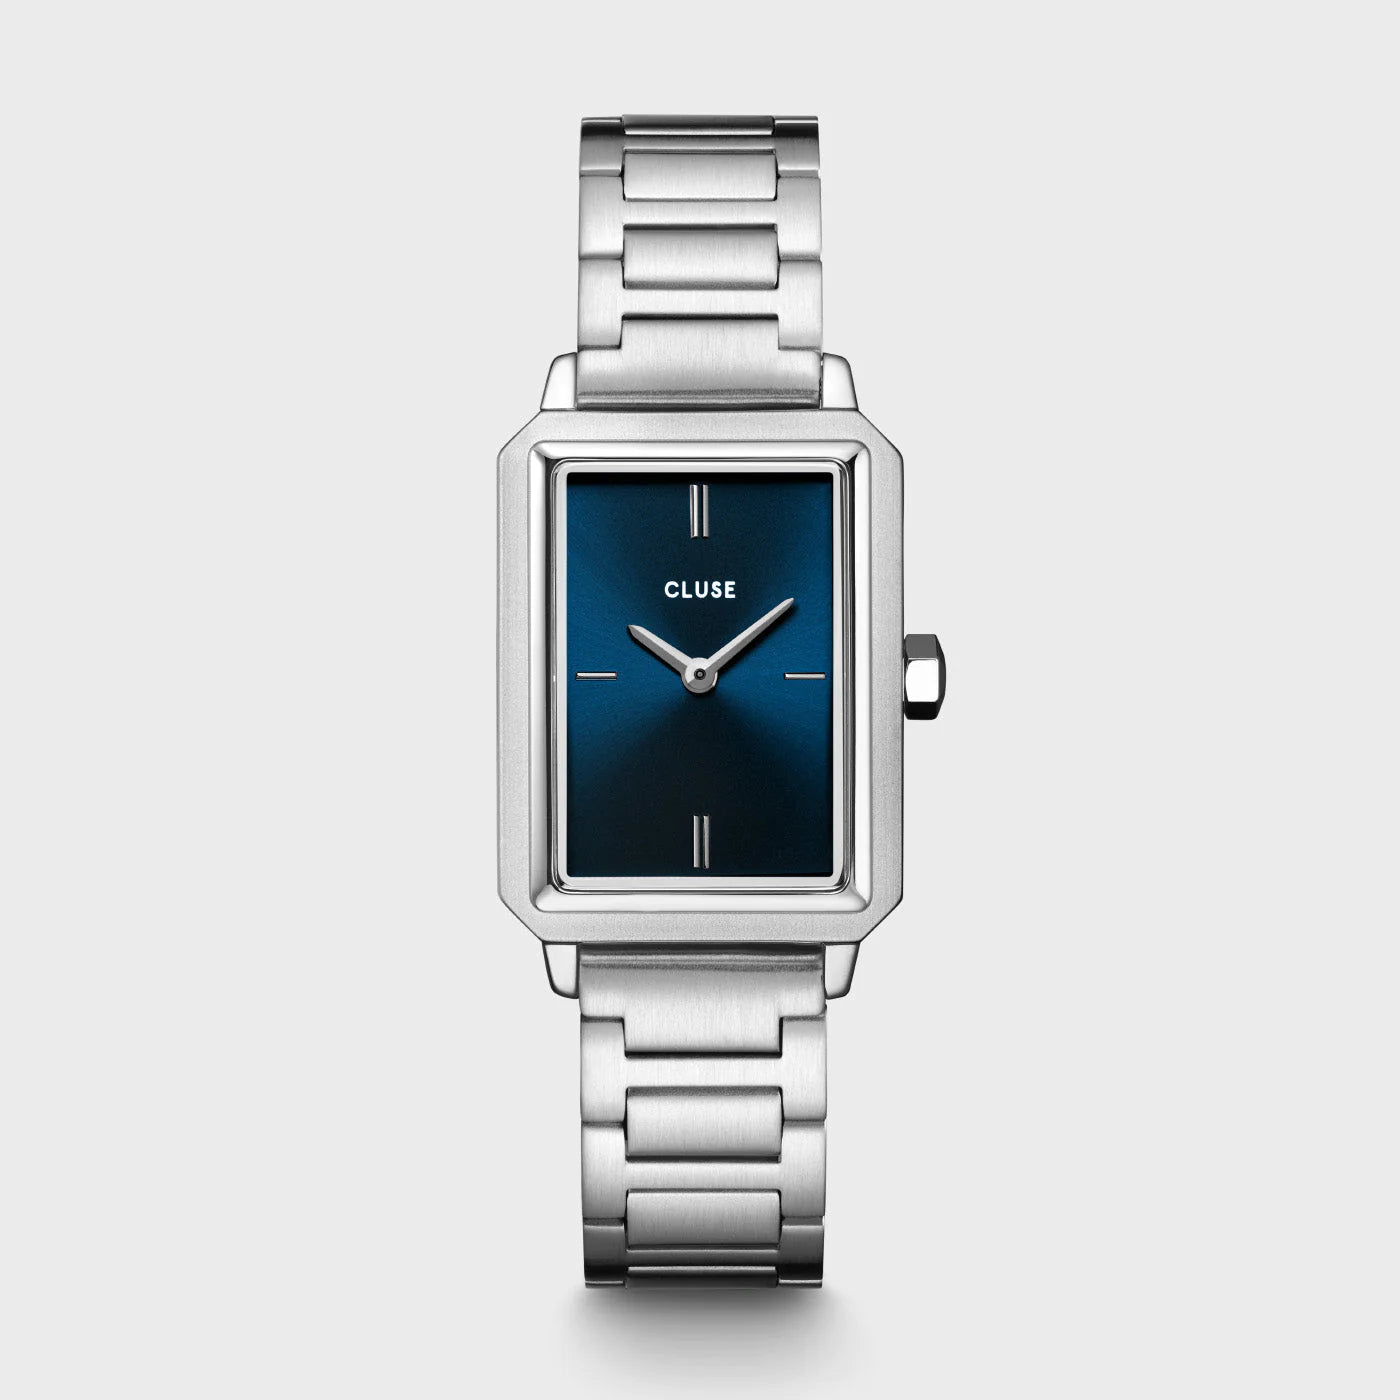 Frontale Ansicht der Cluse "Fluette" Stahl-Uhr mit dunkelblauem Zifferblatt mit silberfarbenem Gehäuse mit Edelstahl-Armband